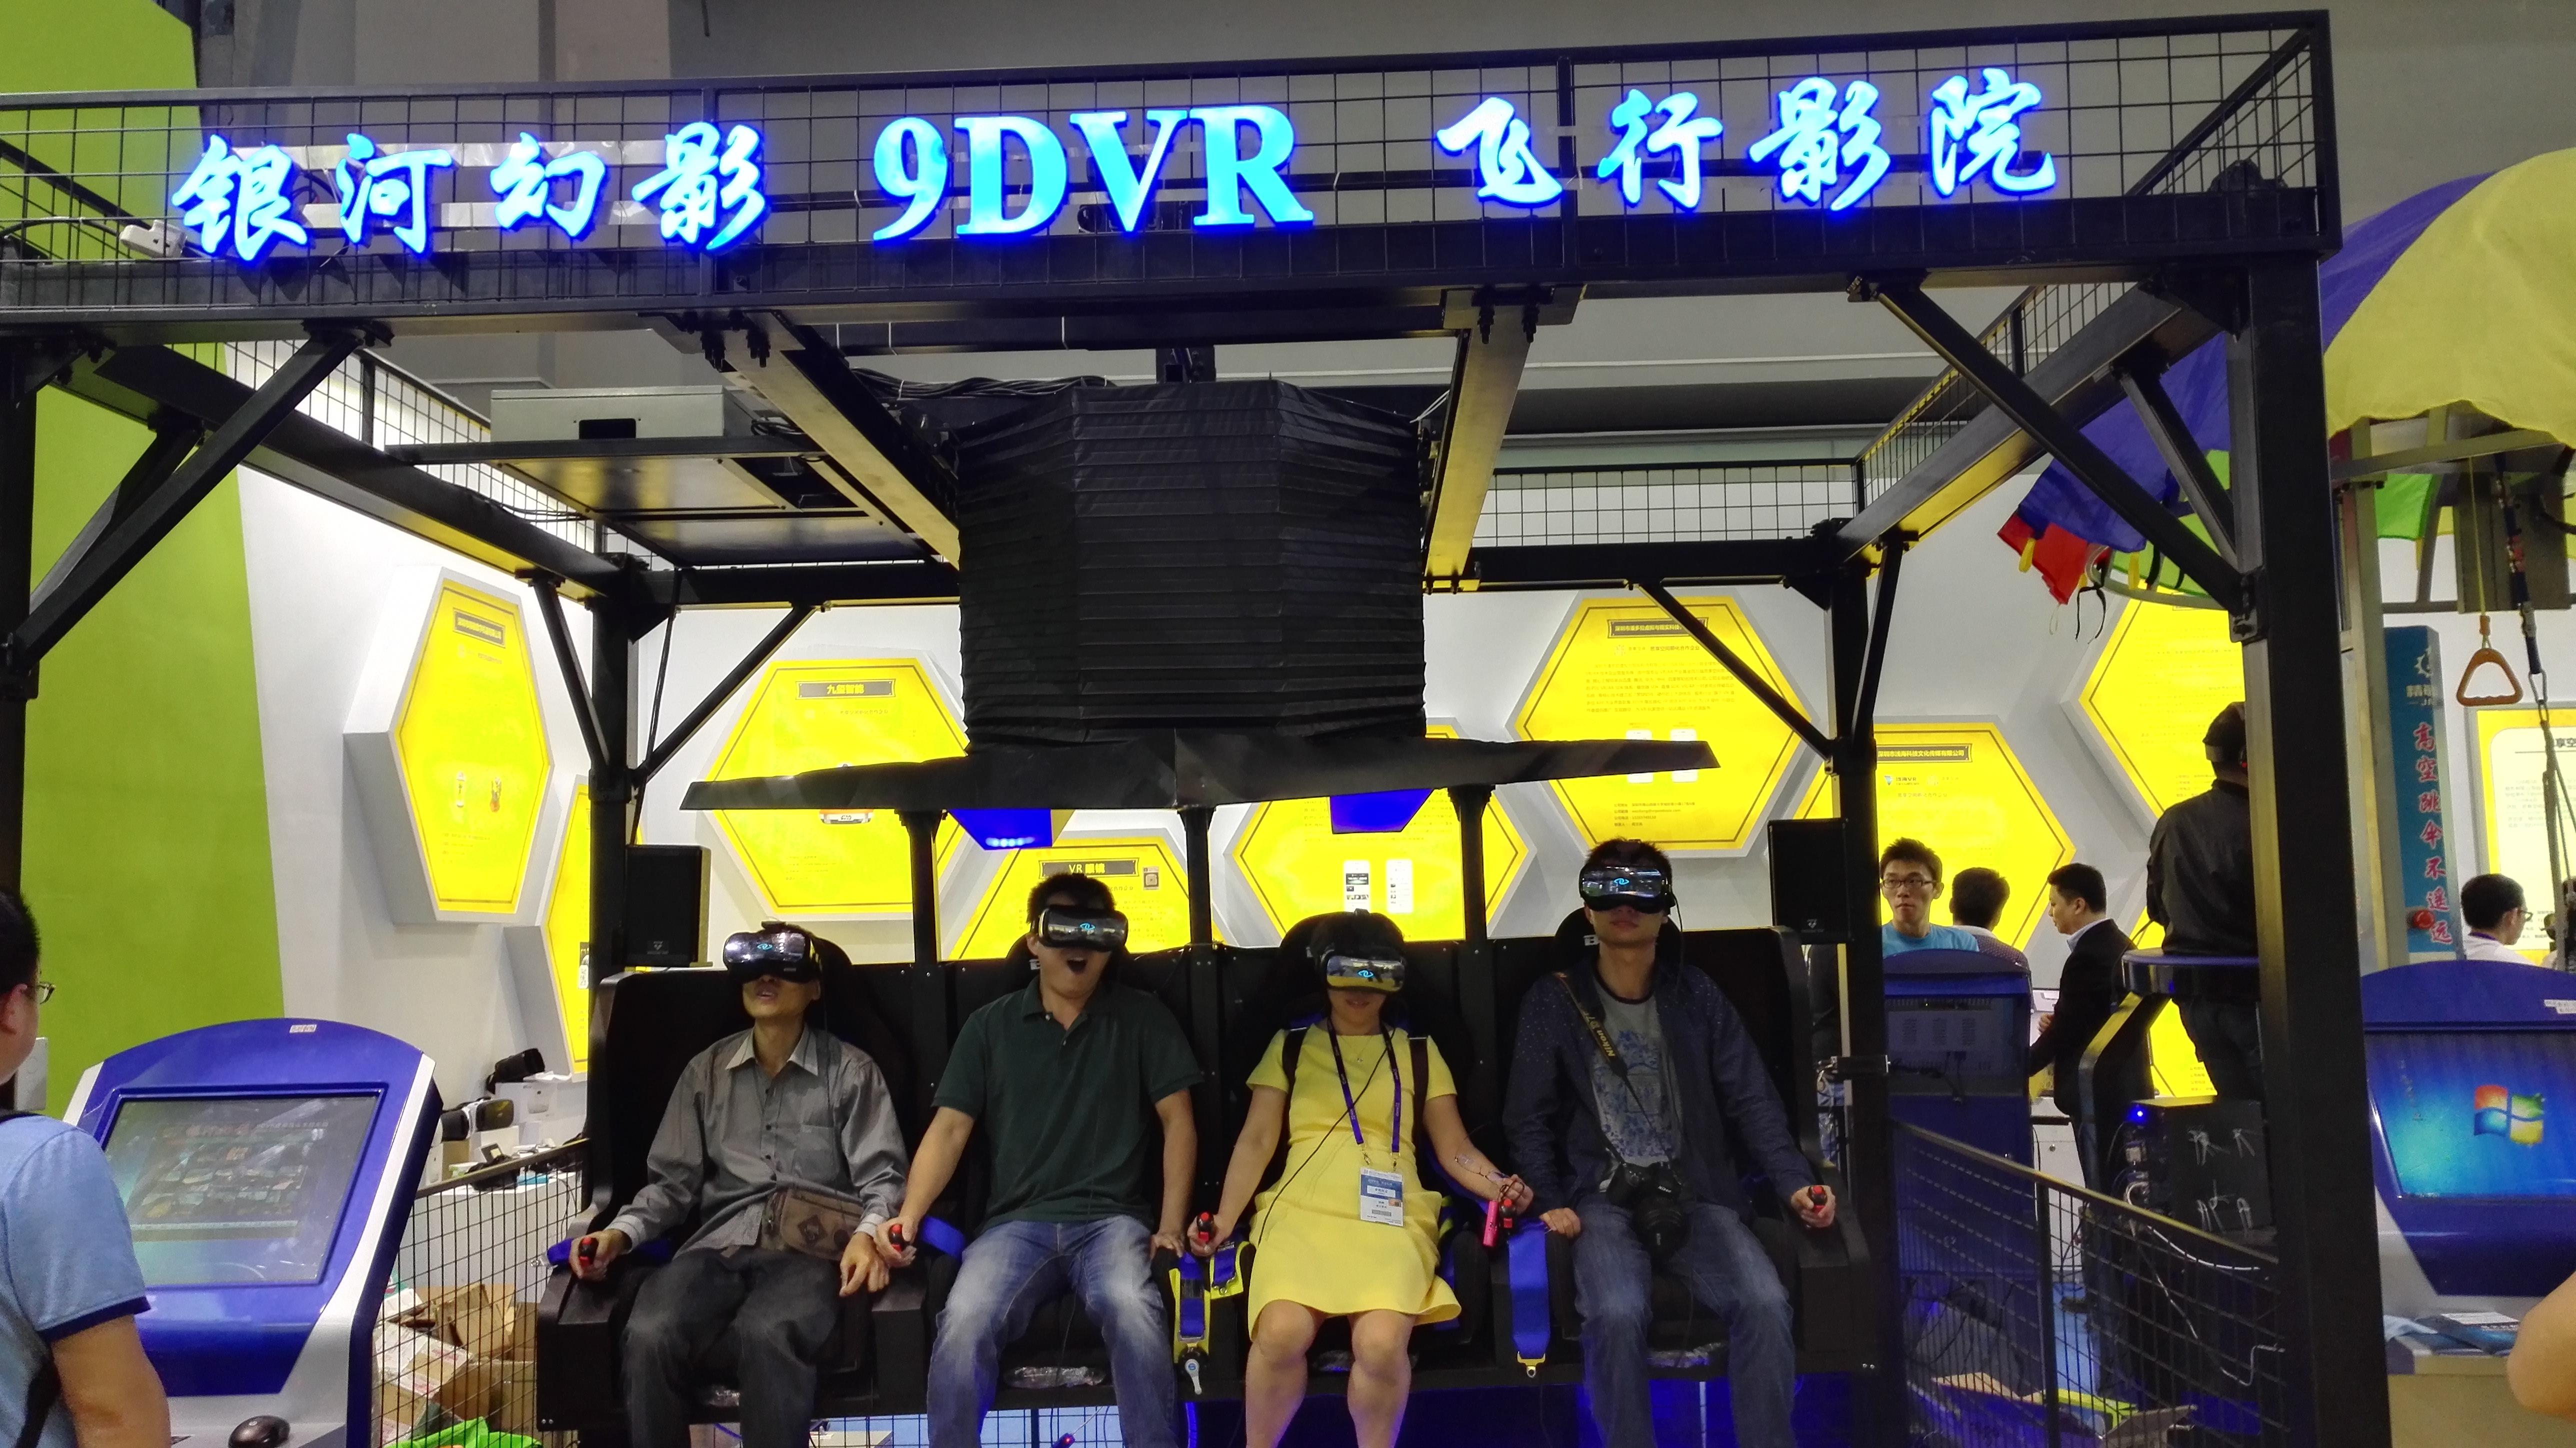 2016年,深圳精敏数字国内首家推出9dvr飞行影院体验馆